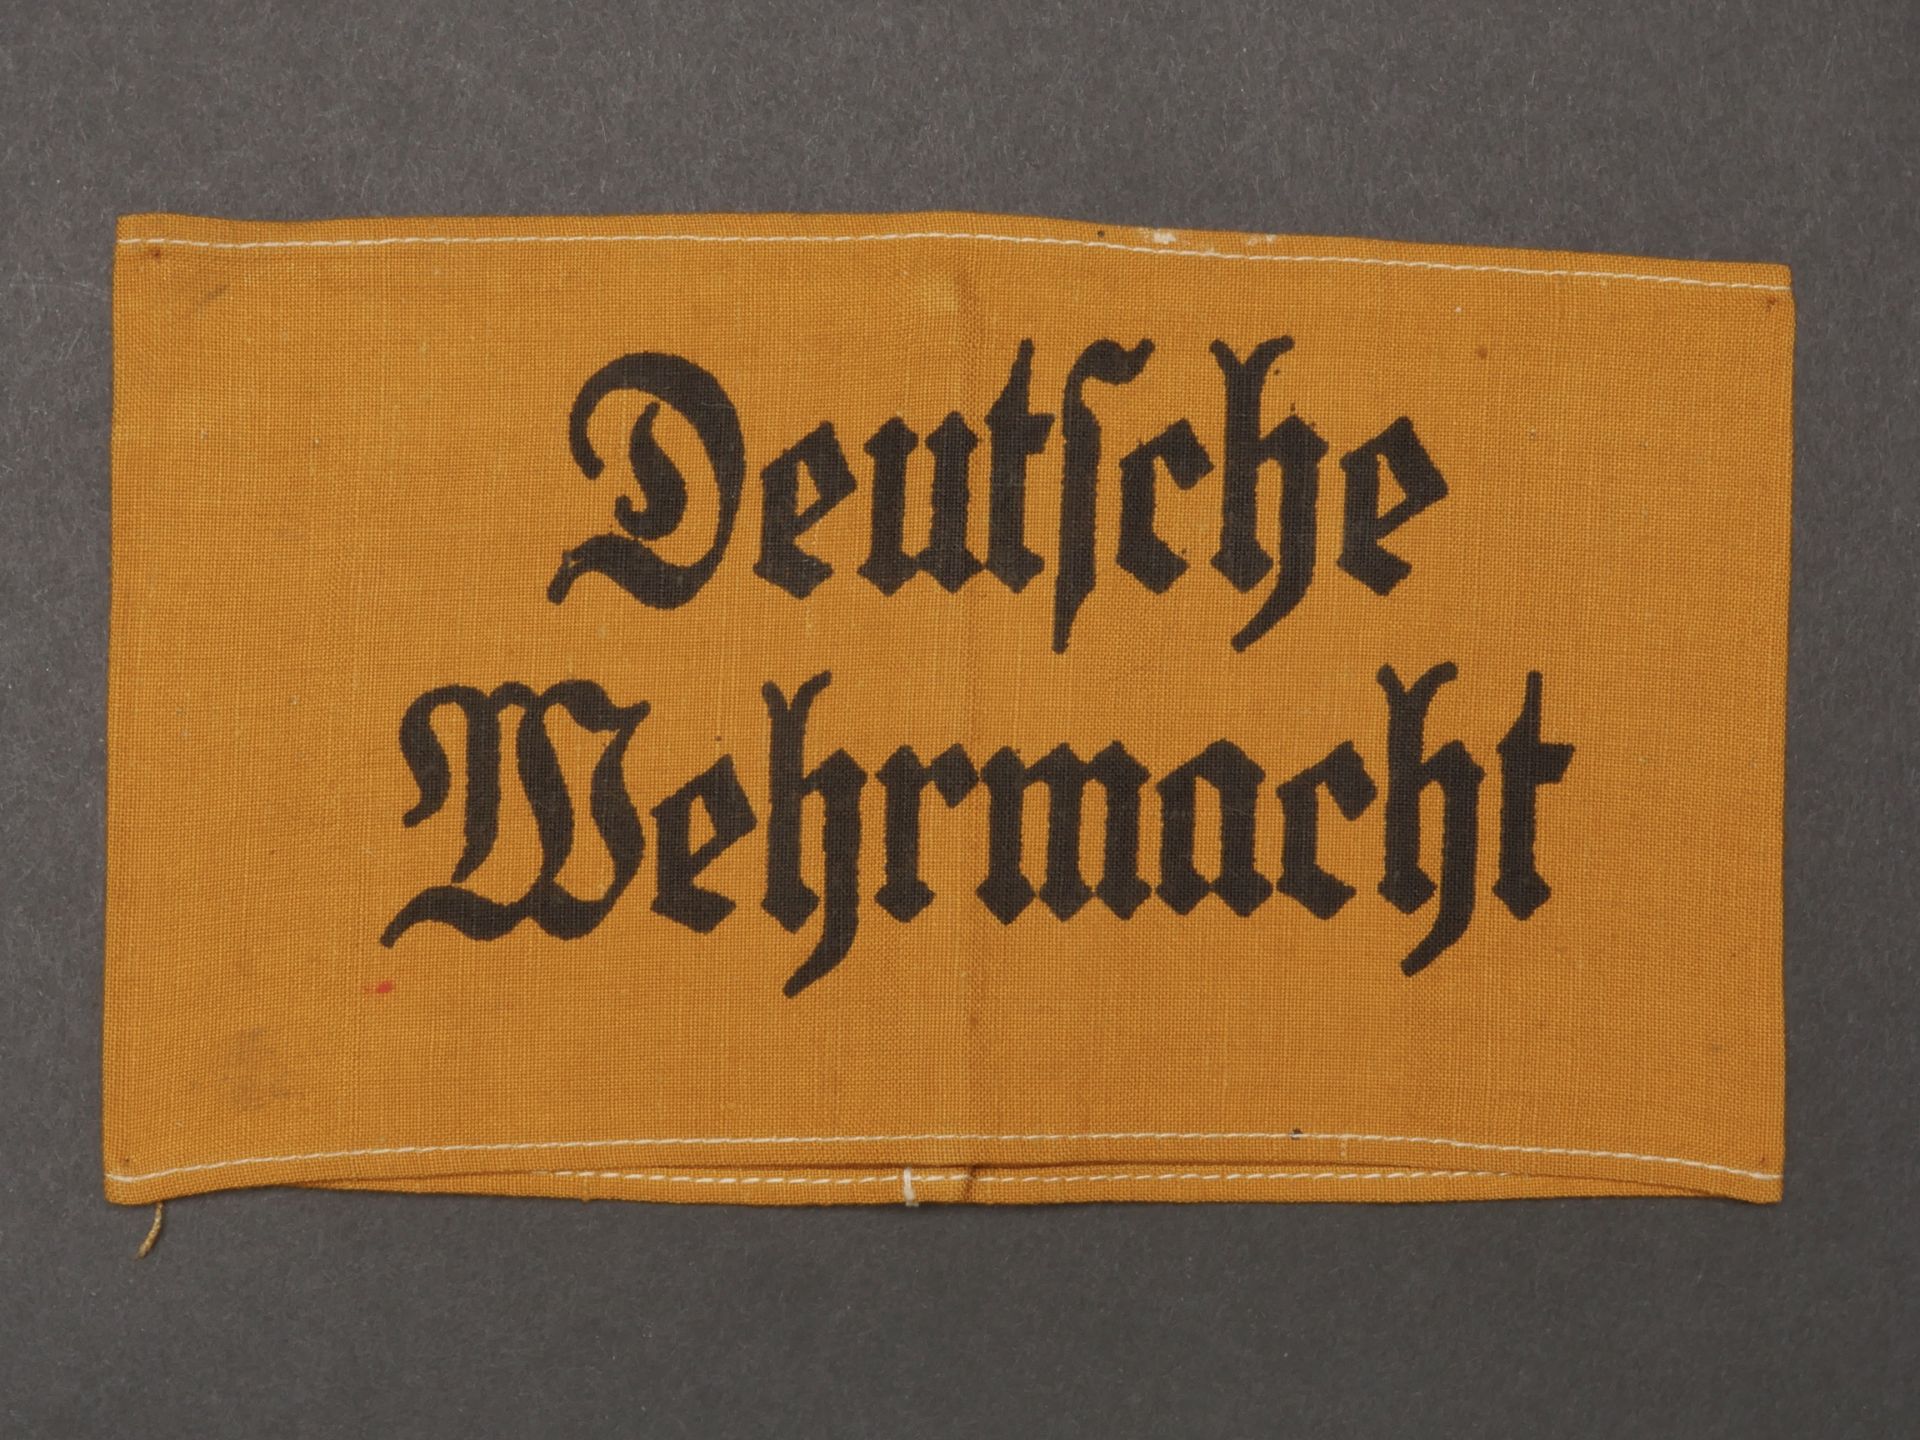 Brassard Deutsche Wehrmacht. Deutsche Wehrmacht armband. 